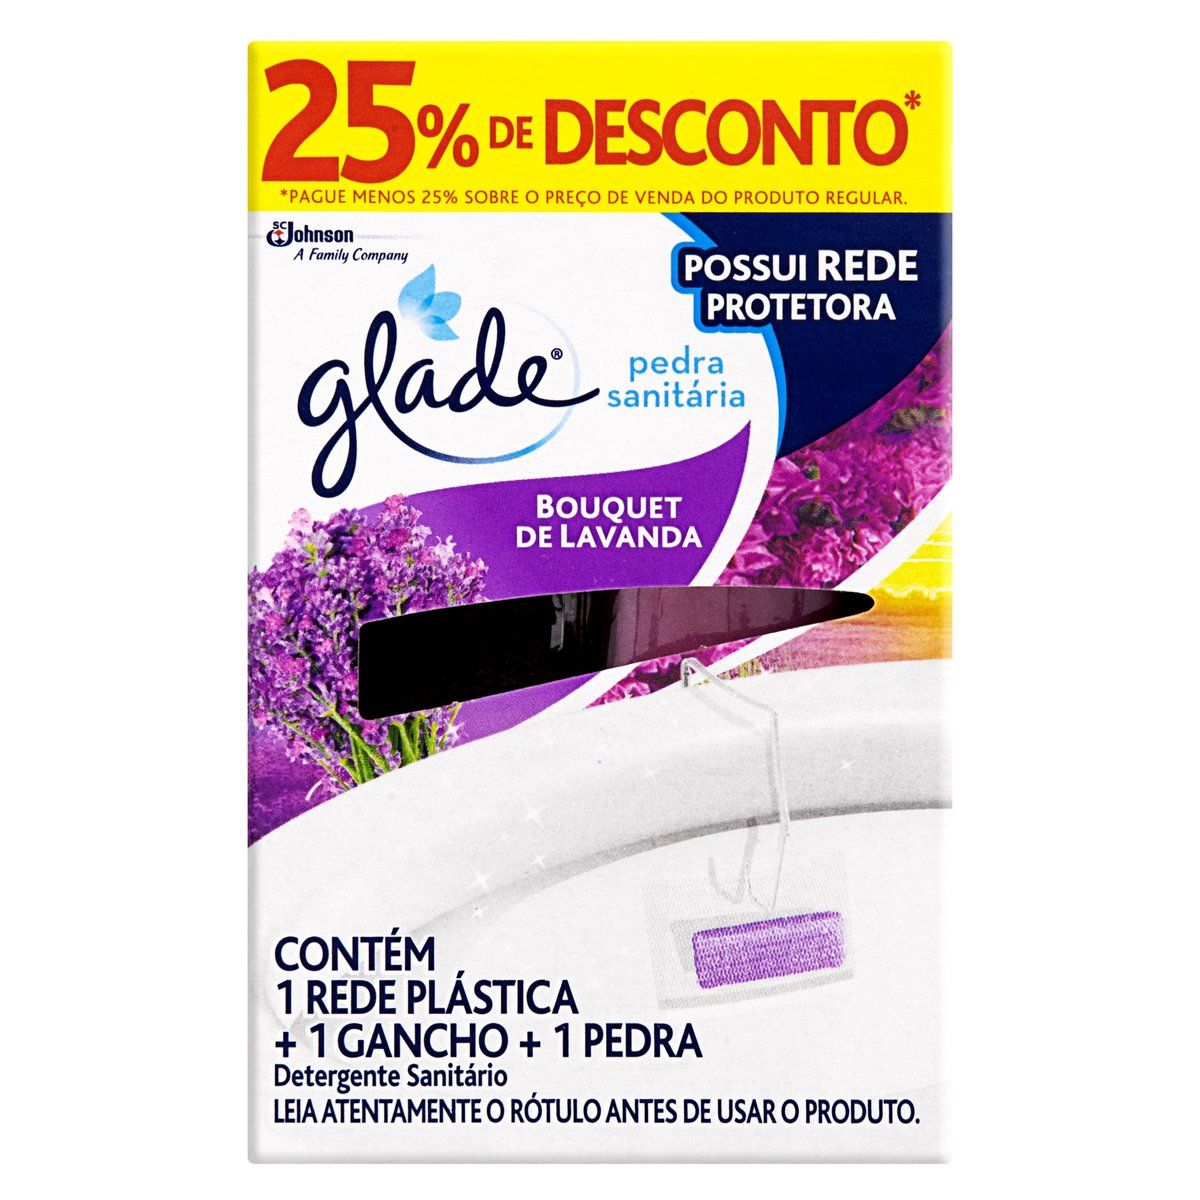 Detergente Sanitário Pato Pedra Bouquet de Lavanda Grátis 25% de Desconto